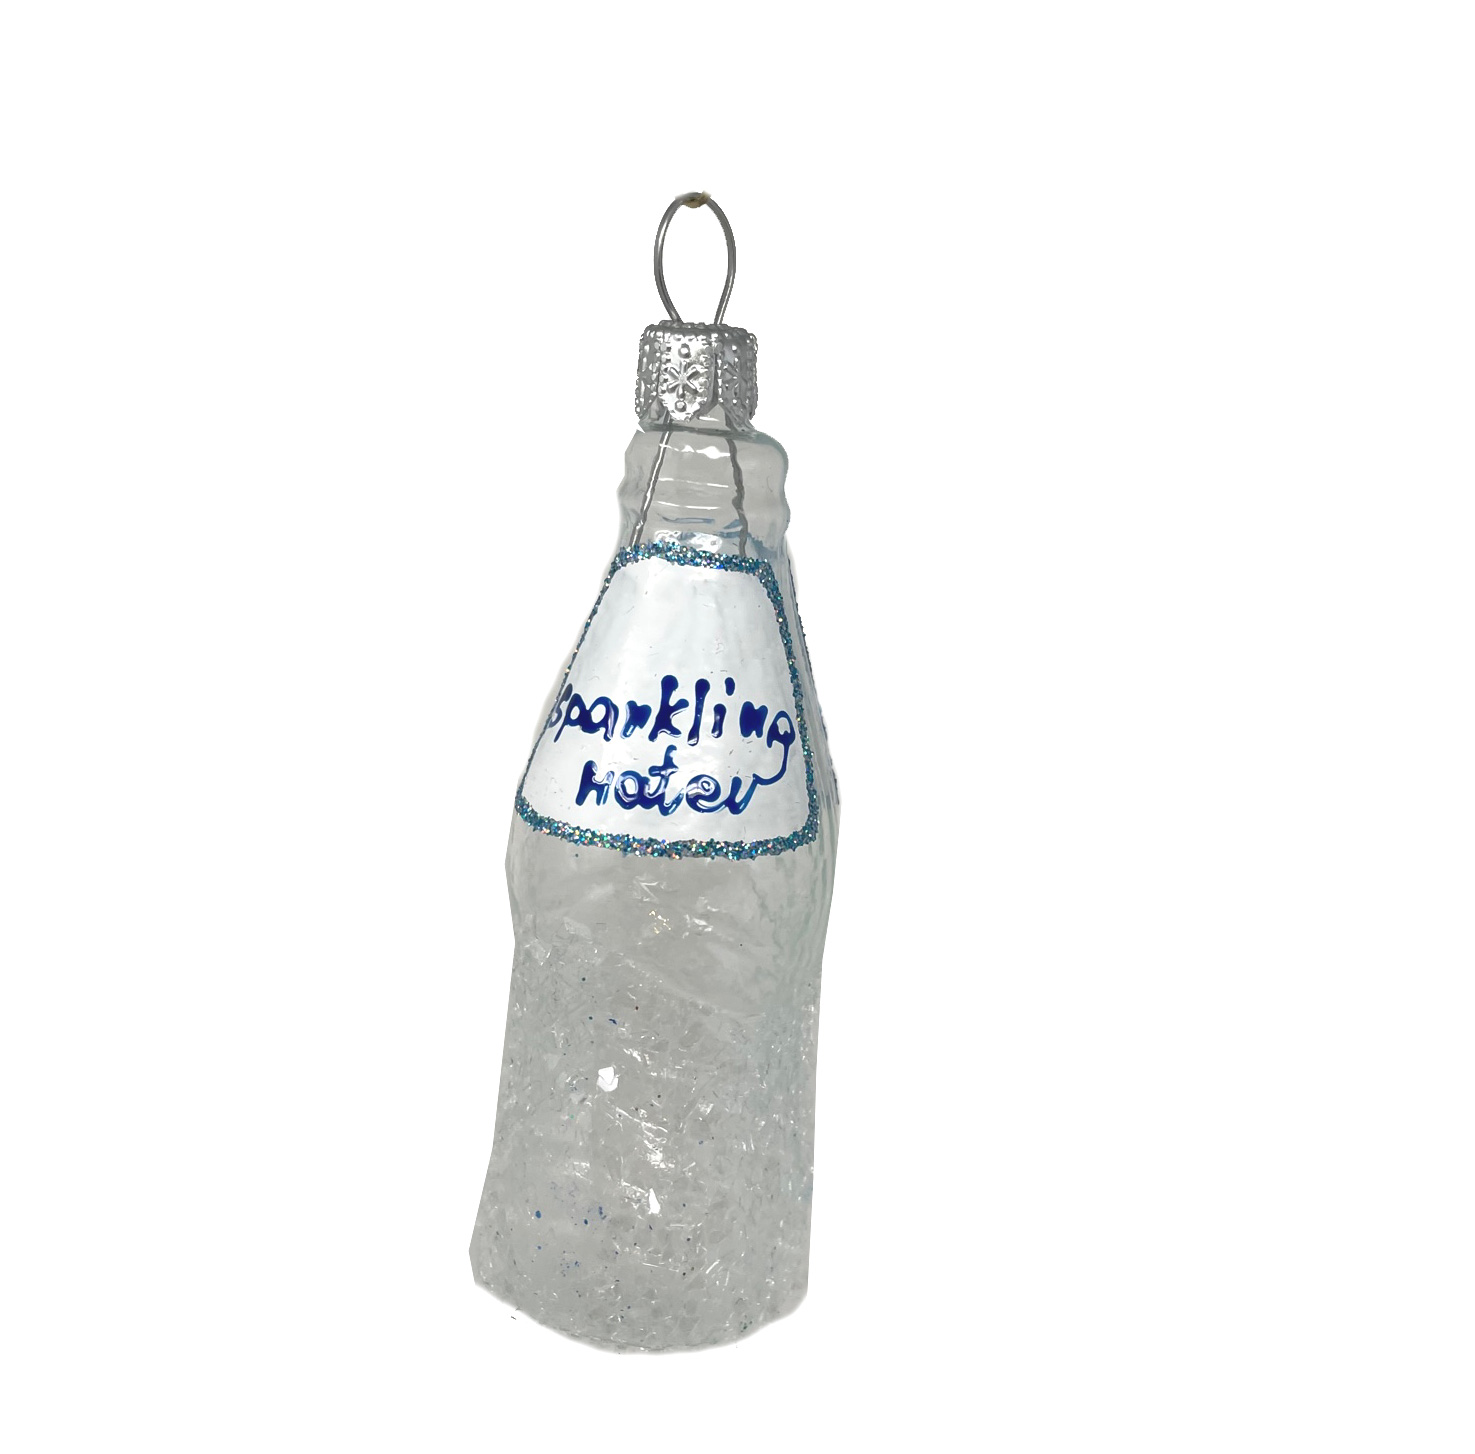 Christbaumkugel Wasser " Sparkling Water"  Wasserflasche, Sprudel, ca. 7,5 cm, Glas   